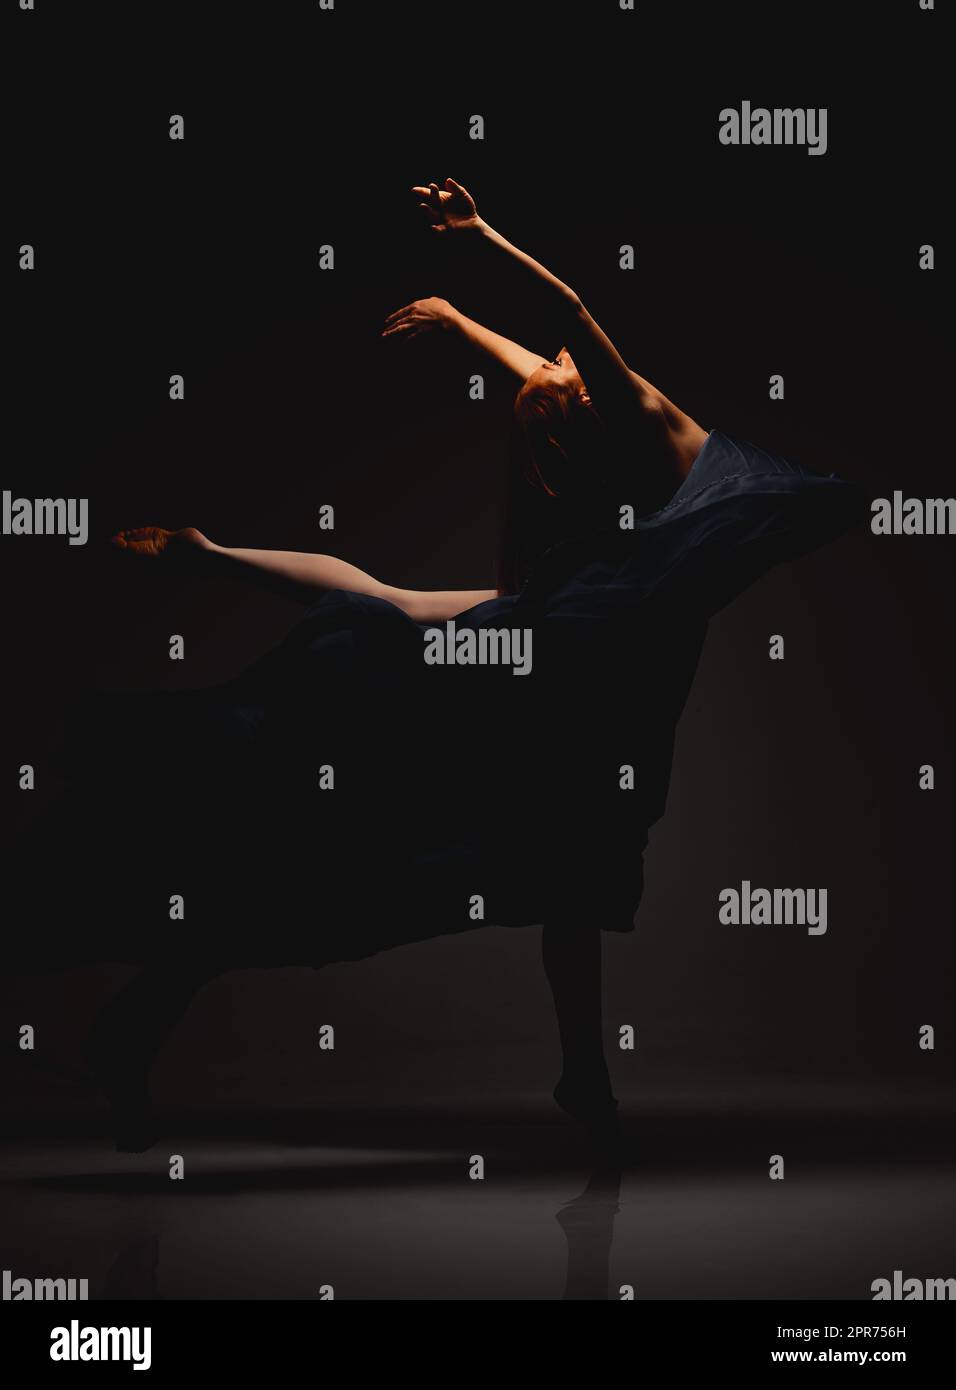 Erleben Sie ihre makellosen Bewegungen. Aufnahme eines Darstellers, der vor dunklem Hintergrund tanzt. Stockfoto